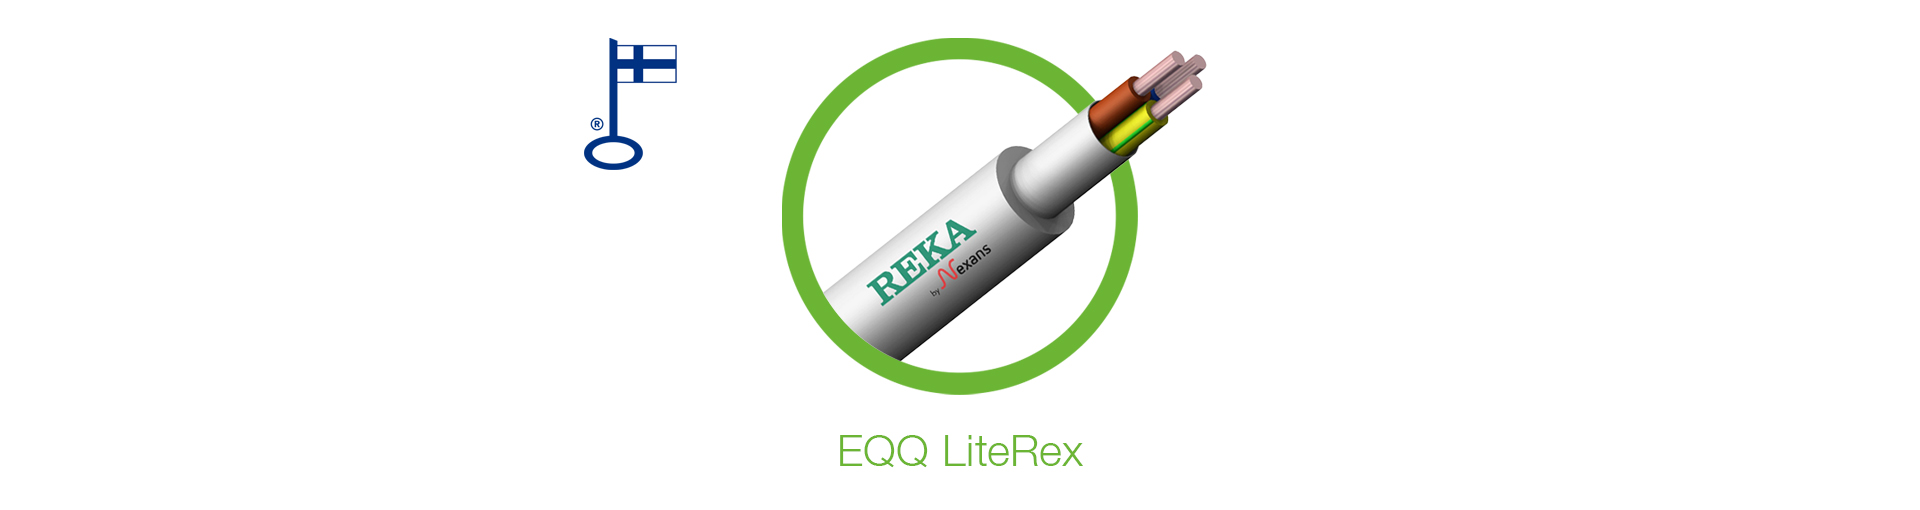 Kotimainen EQQ LiteRex täysin UV-suojattu halogeeniton asennuskaapeli. EQQ LiteRex on taipuisa, pysyy hyvin muodossaan ja on erittäin helppo kuoria. Se on suunniteltu asentajan työtä ajatellen!